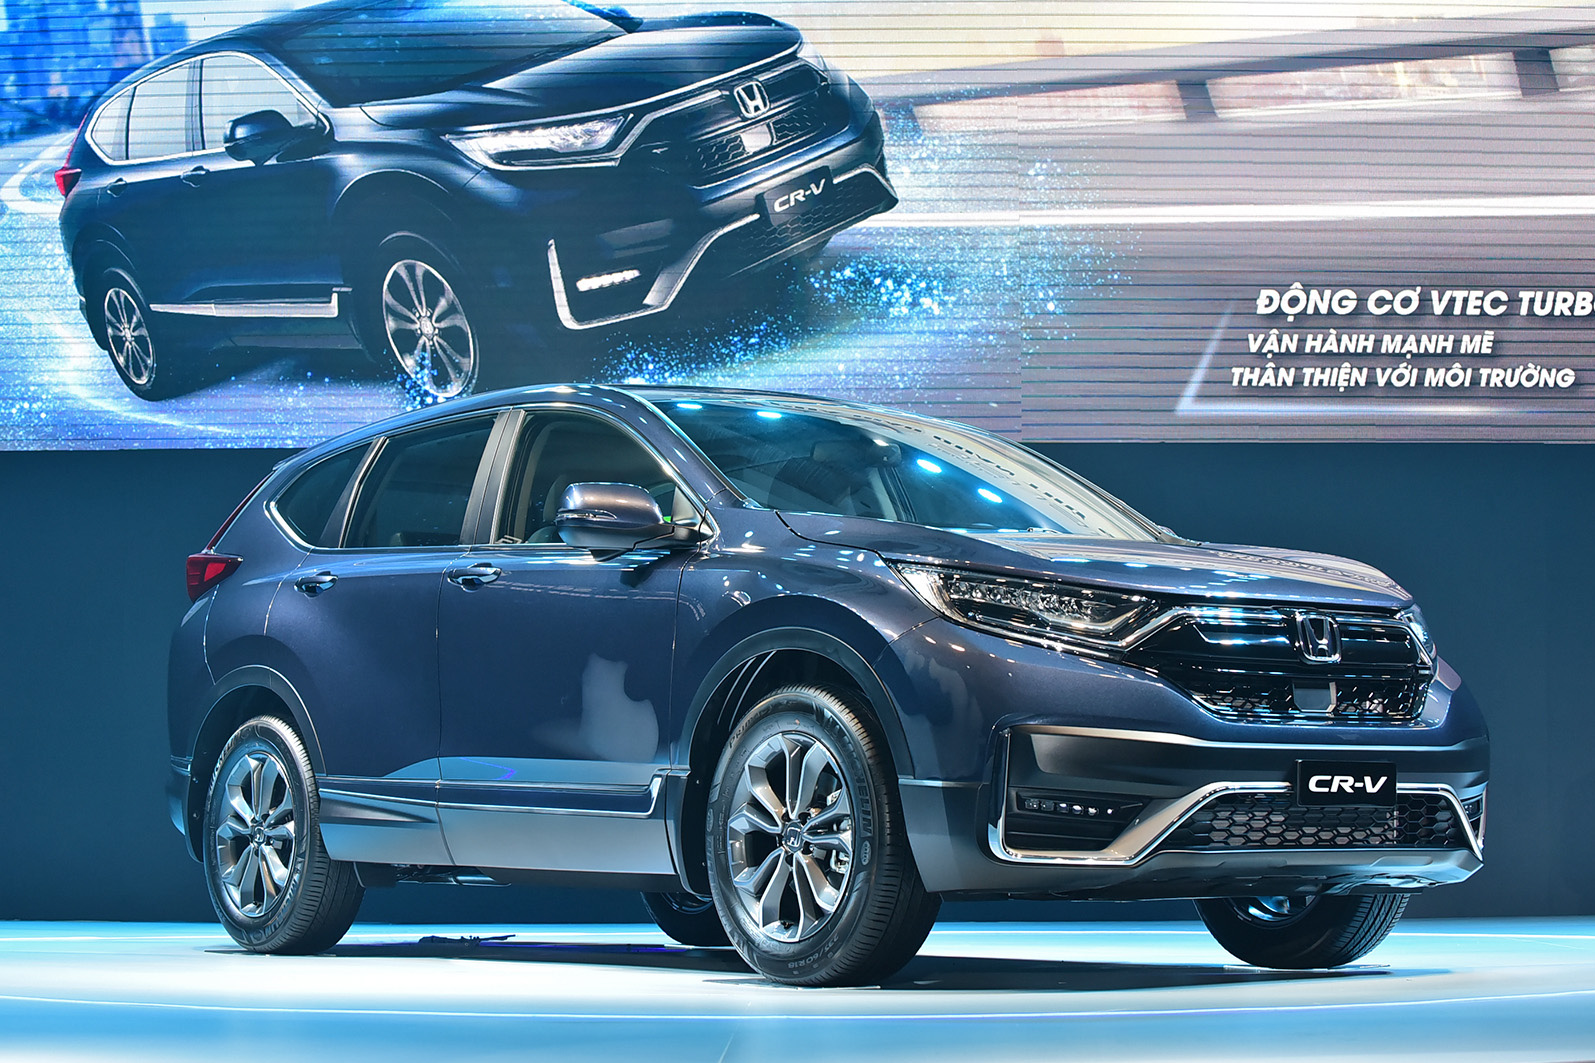 Honda CR-V 2020 lắp ráp giá từ 998 triệu đồng: Tiêu chuẩn hoá công nghệ an toàn 'khủng' đấu Mazda CX-5